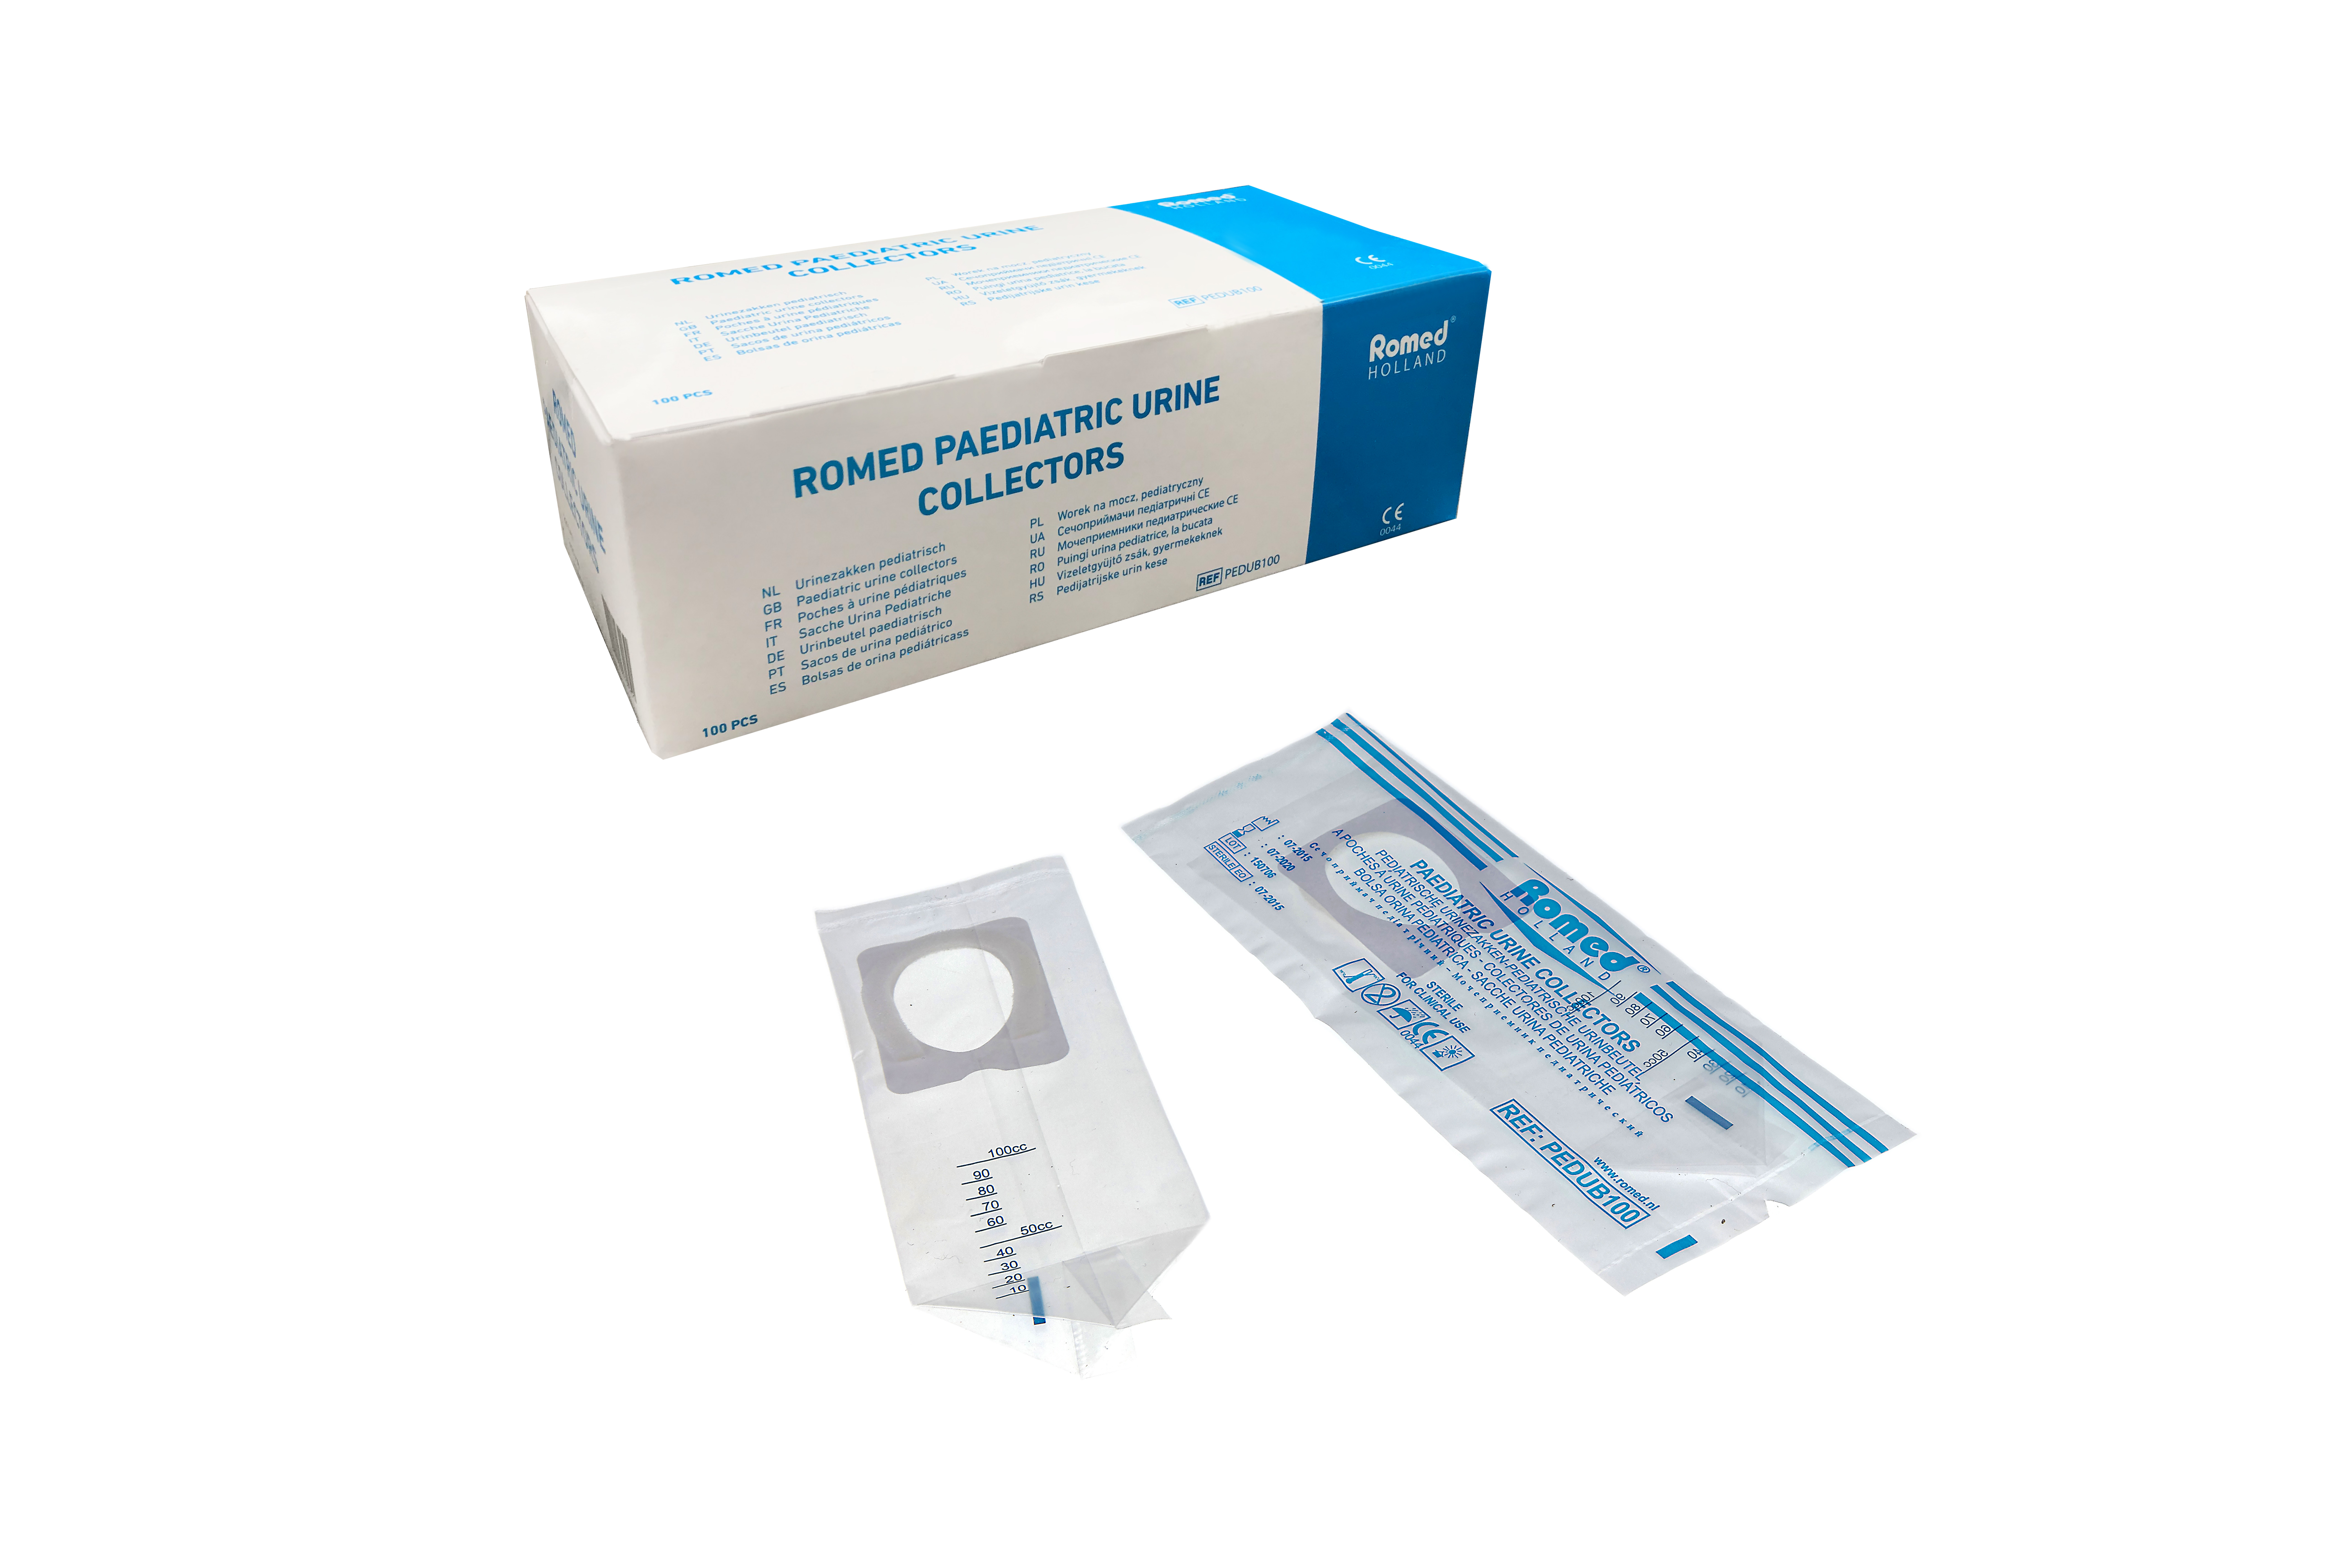 PEDUB100 Poches à urine pédiatriques Romed, conditionnées individuellement dans un sac plastique, 100 unités par boîte intérieure, 20 x 100 unités = 2 000 unités par carton.